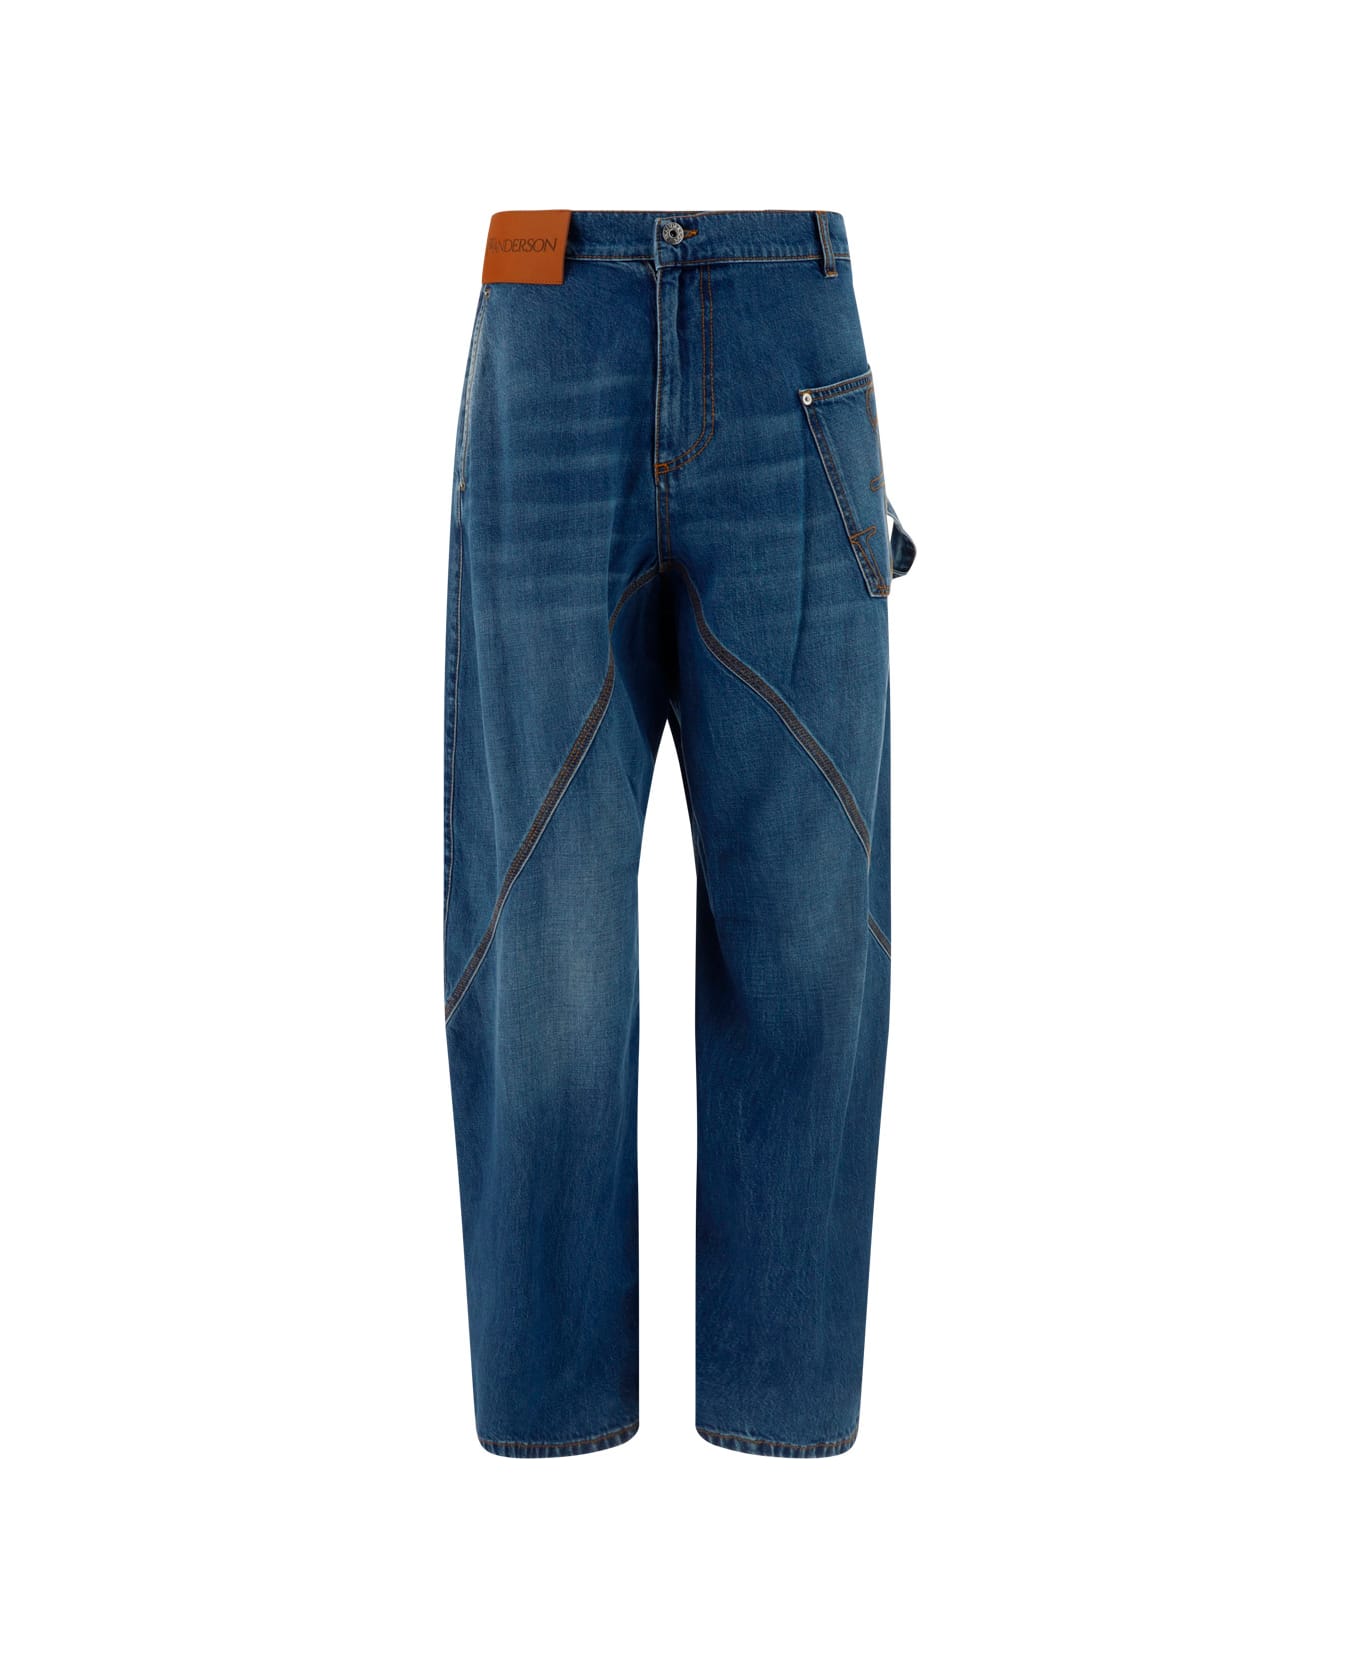 J.W. Anderson Worker Jeans - Denim